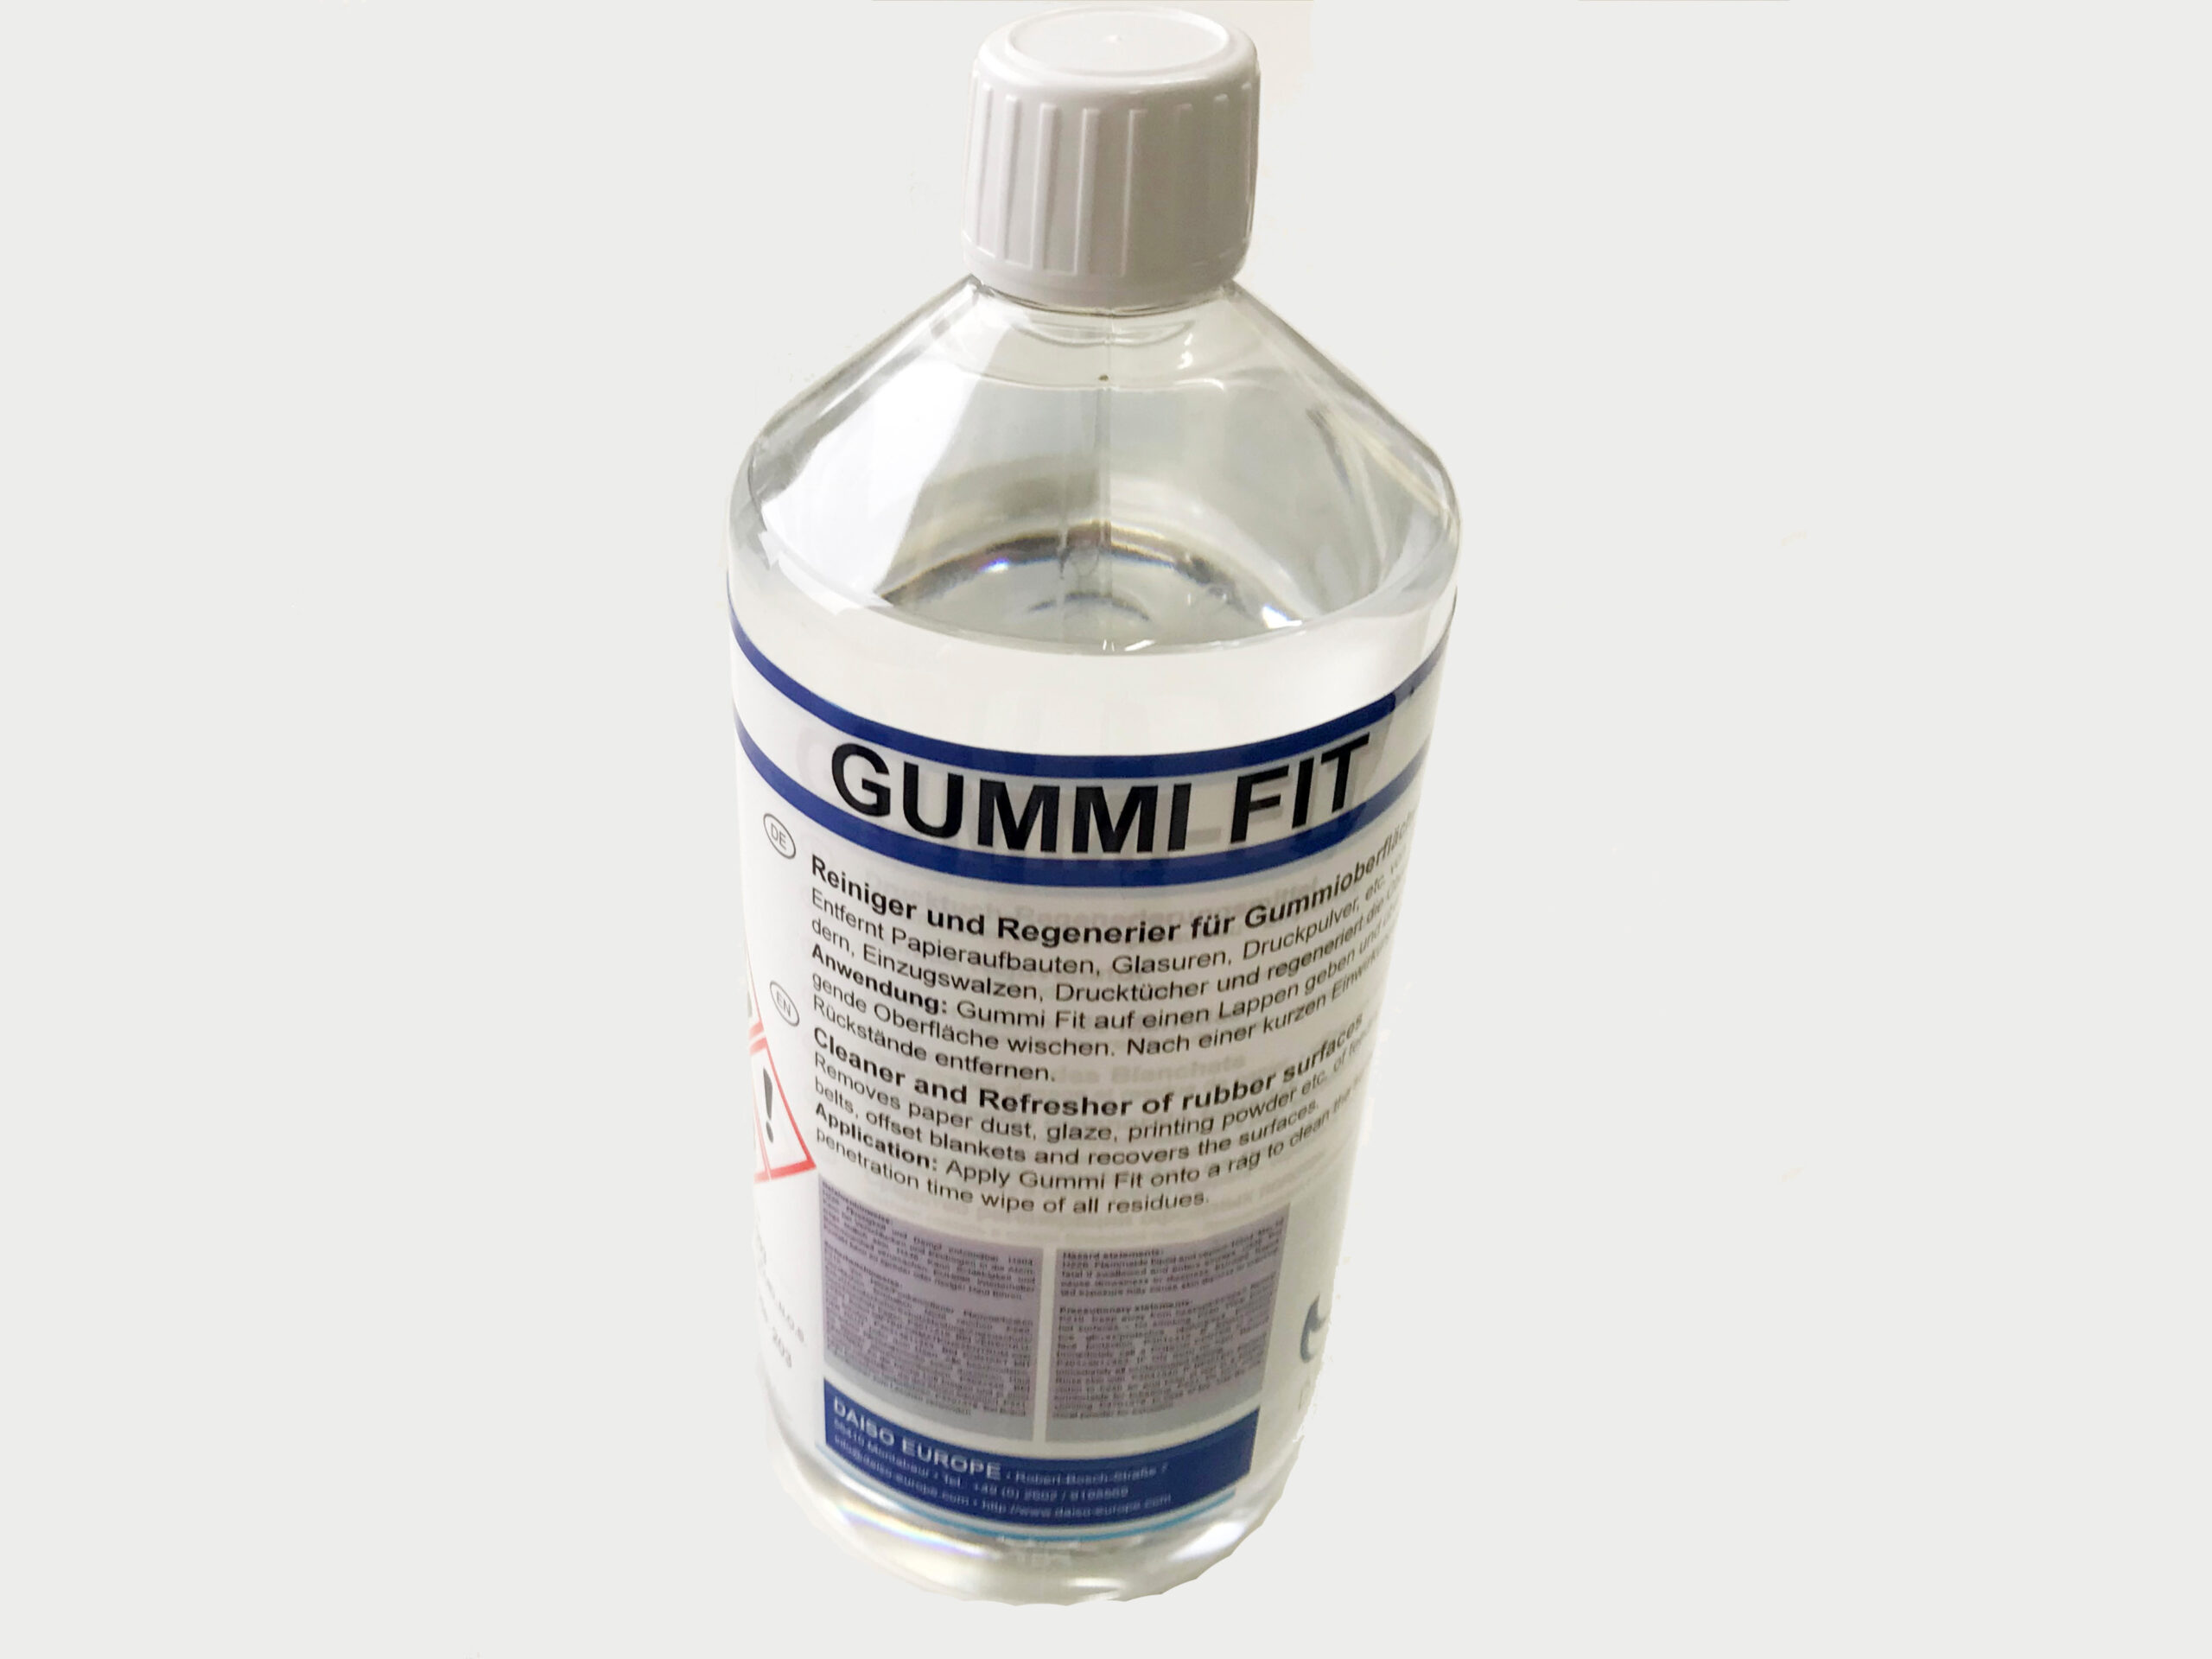 Gummipflege Gummifit - 75ml - Silikonfreie Pflege für